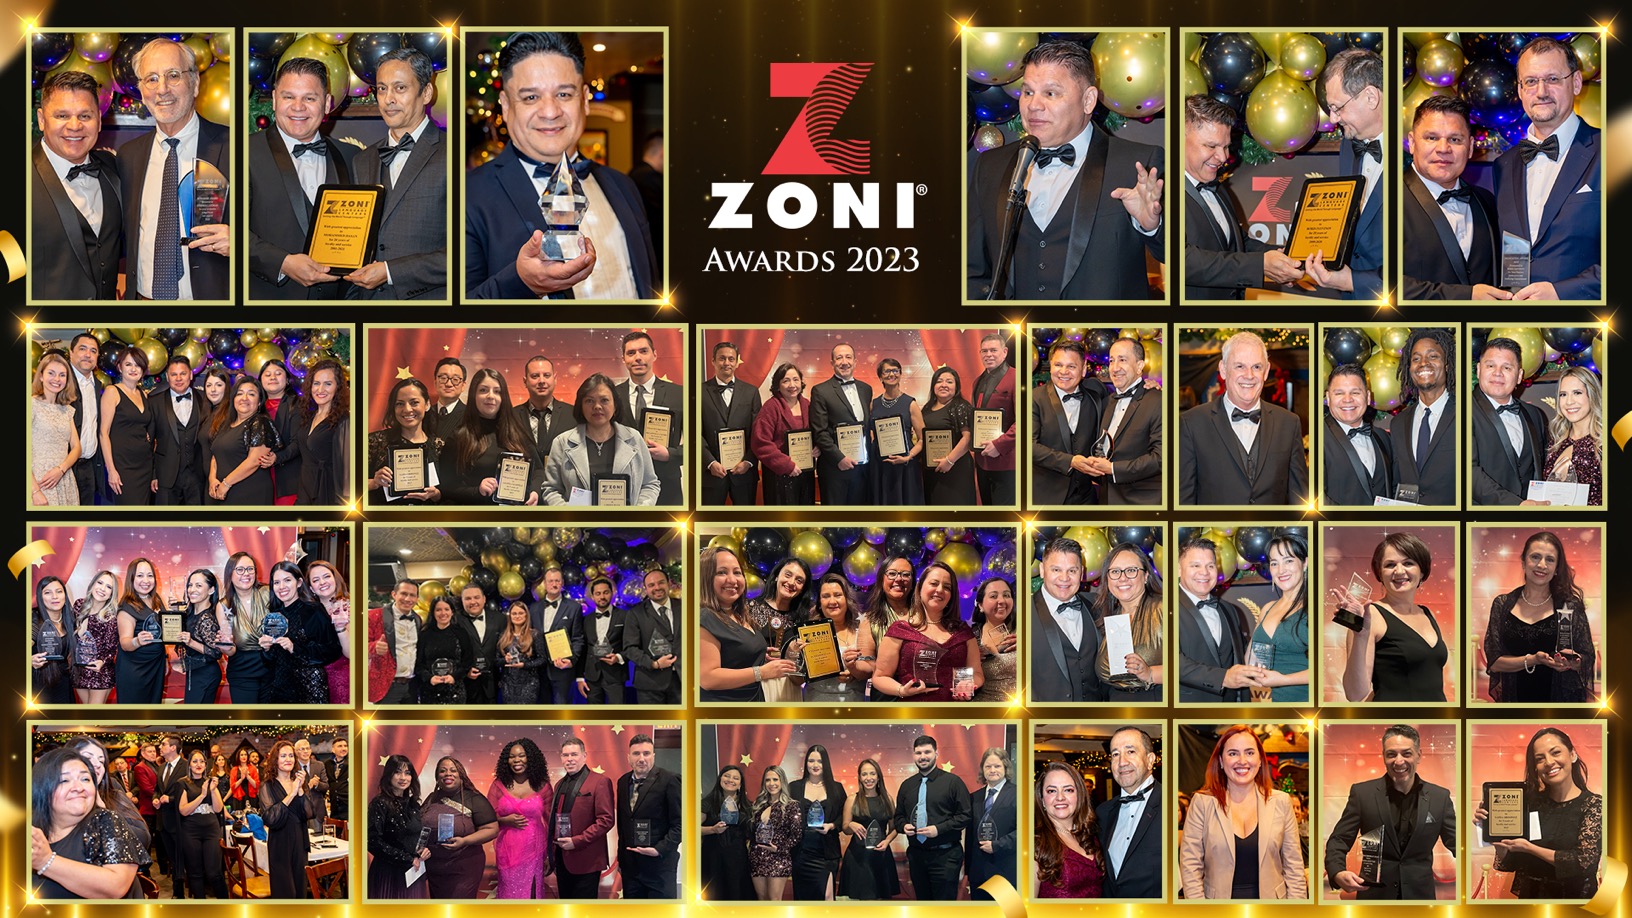 Zoni Awards 2023